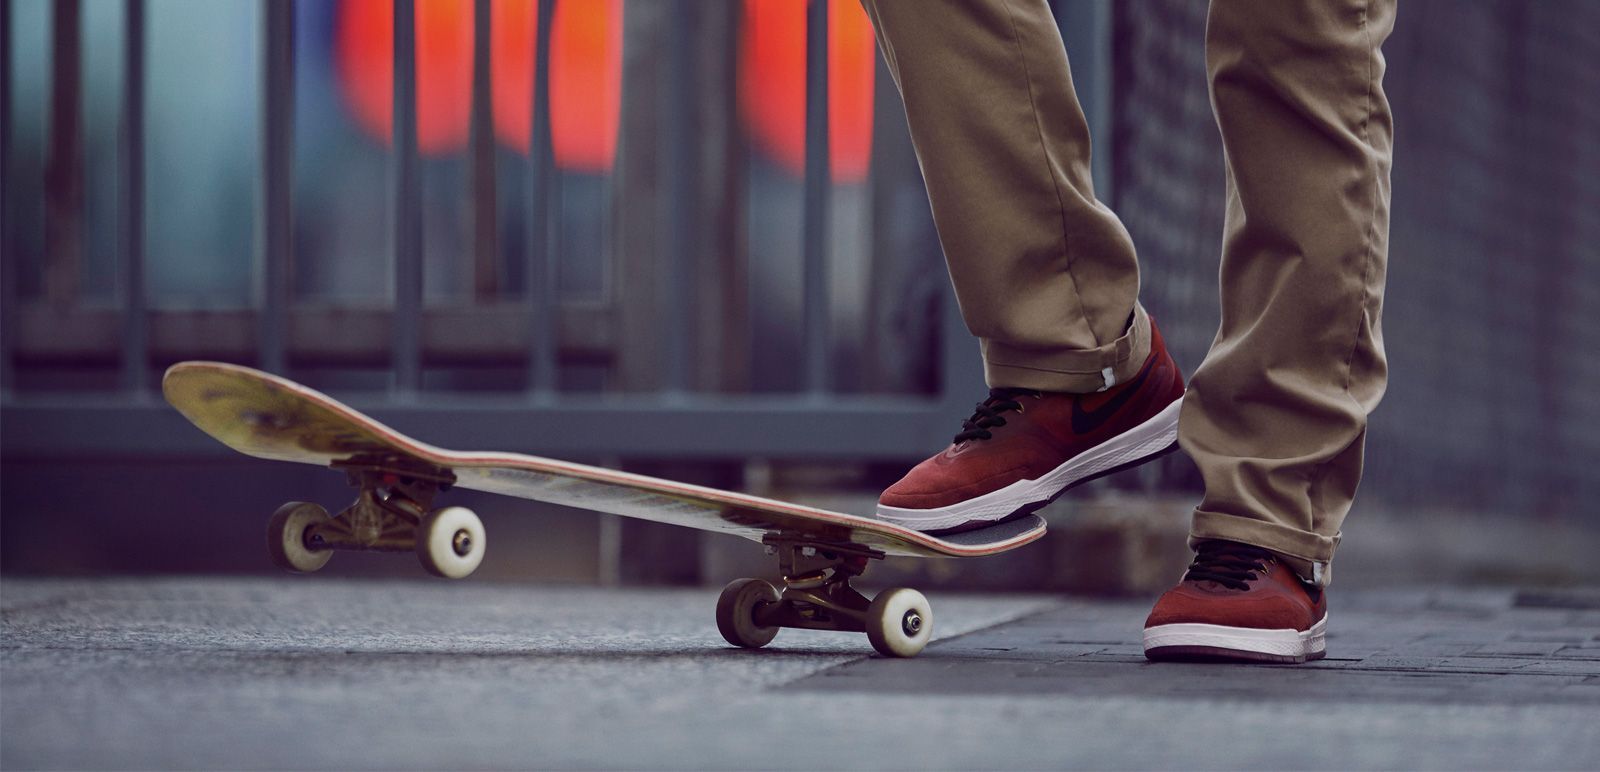 Le scarpe da skate Nike SB sono dotate delle tecnologie più all’avanguardia, per garantire una sensazione di guida dello skateboard il più autentica possibile. Qui possiamo vedere le Nike SB P-Rod 9.